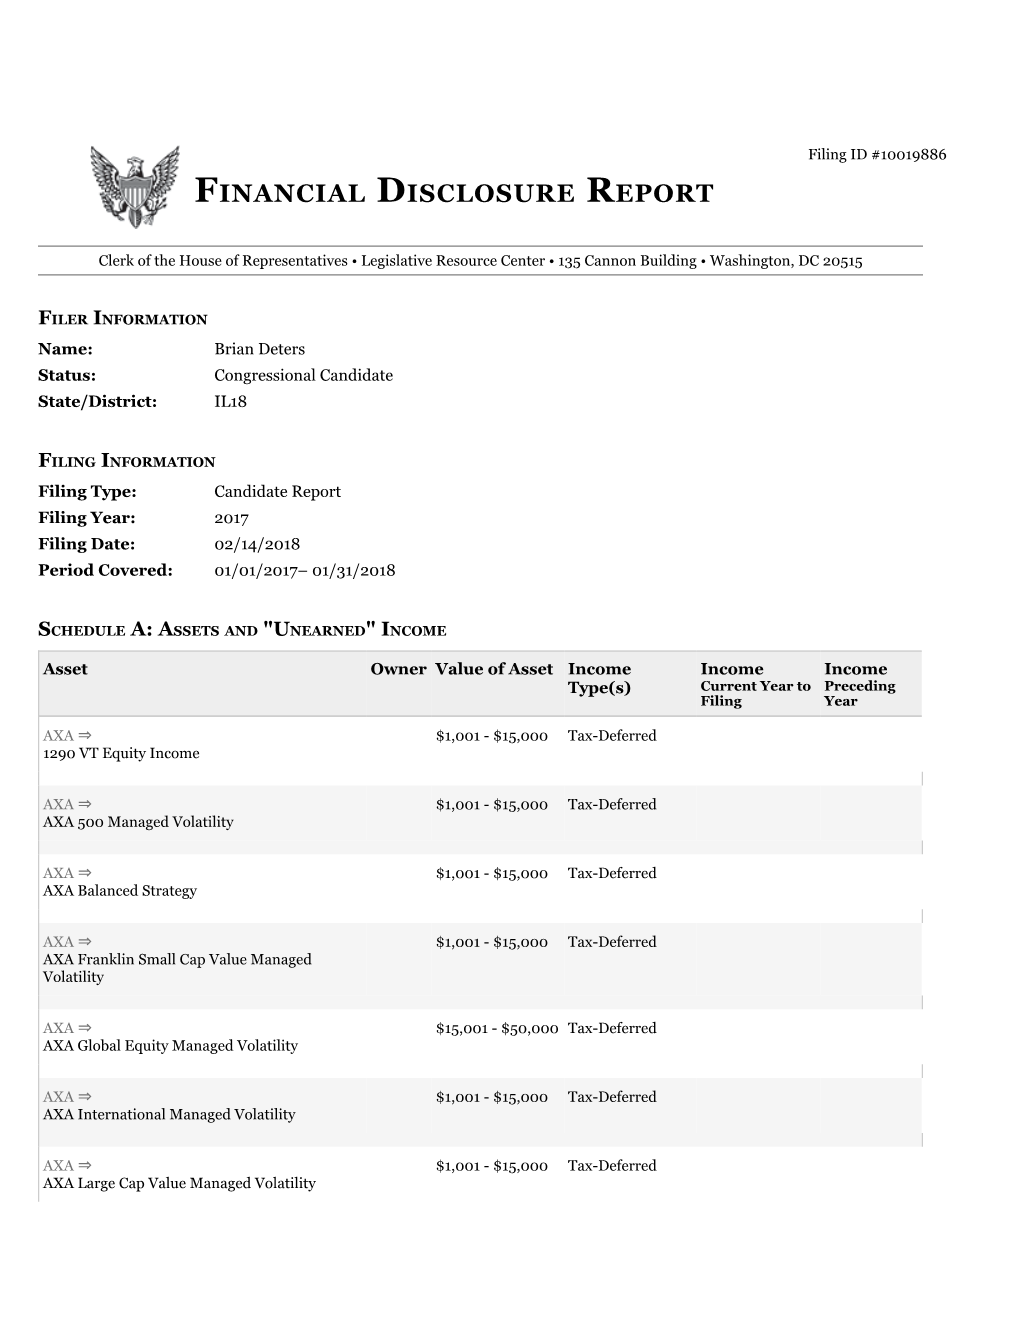 Financial Disclosure Report